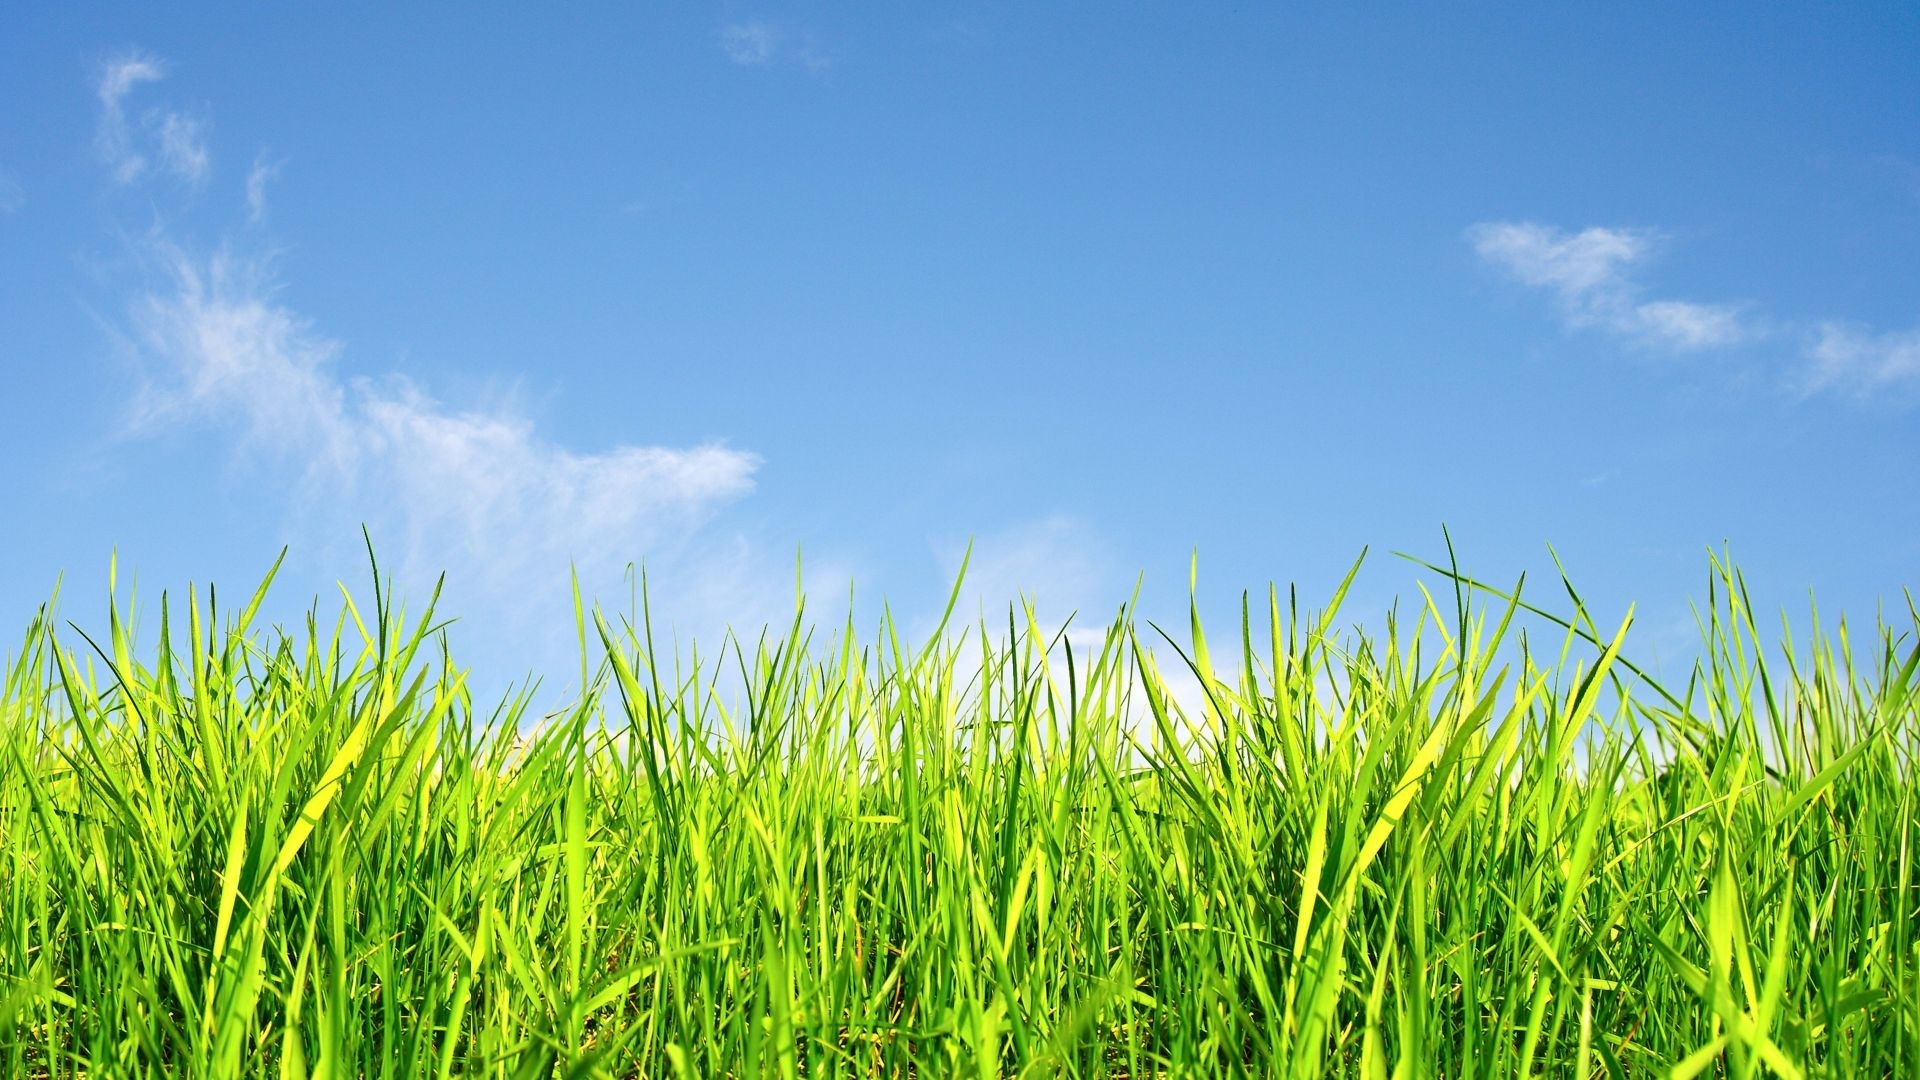 Sky And Grass Desktop Wallpaper